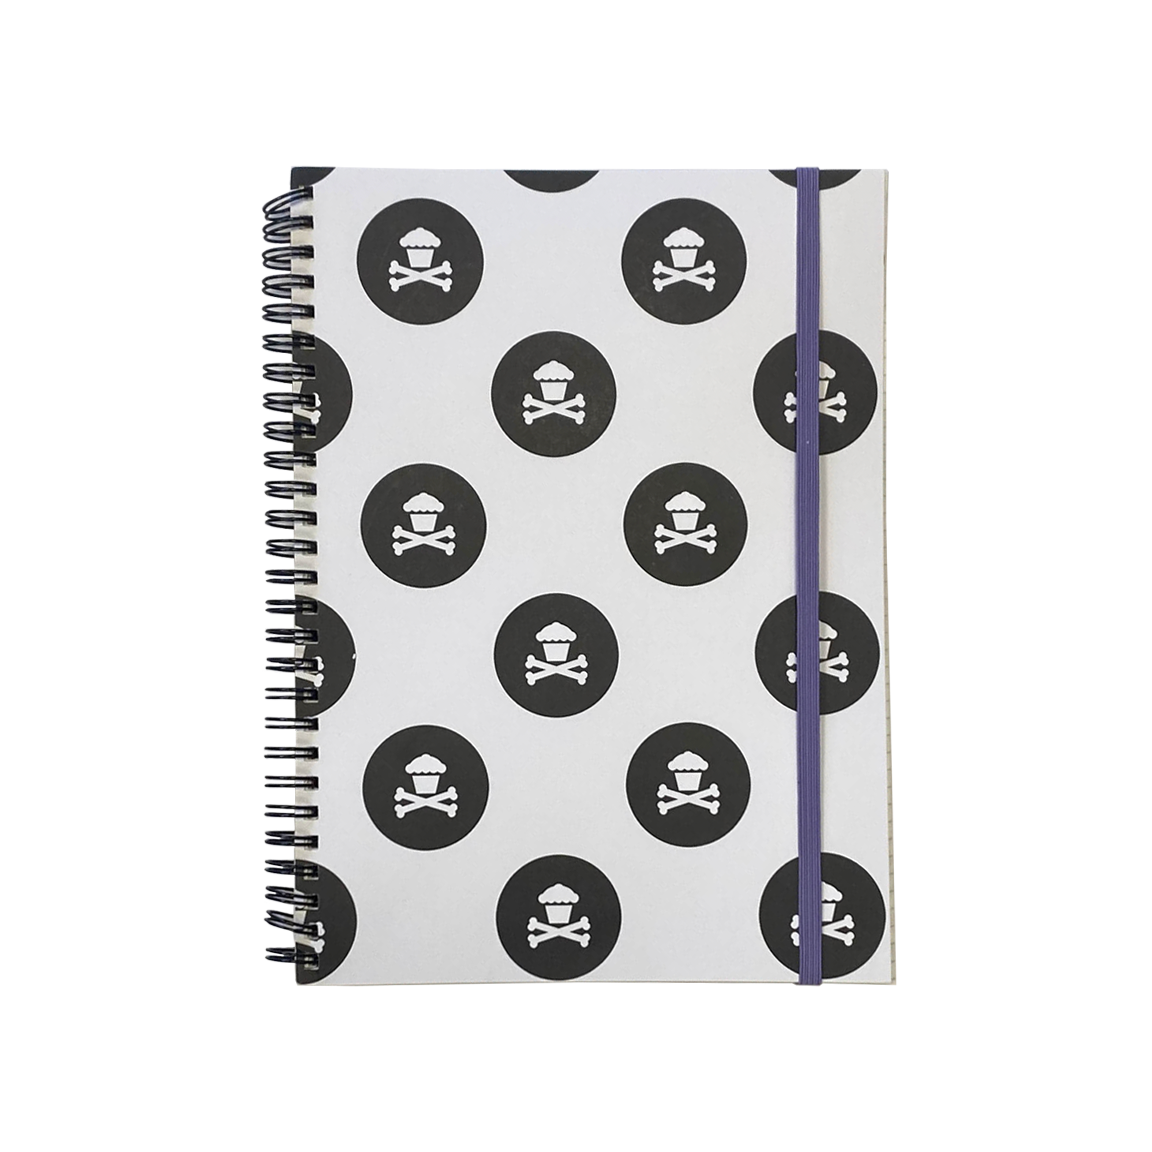 Spiral Notebook - Polkadot